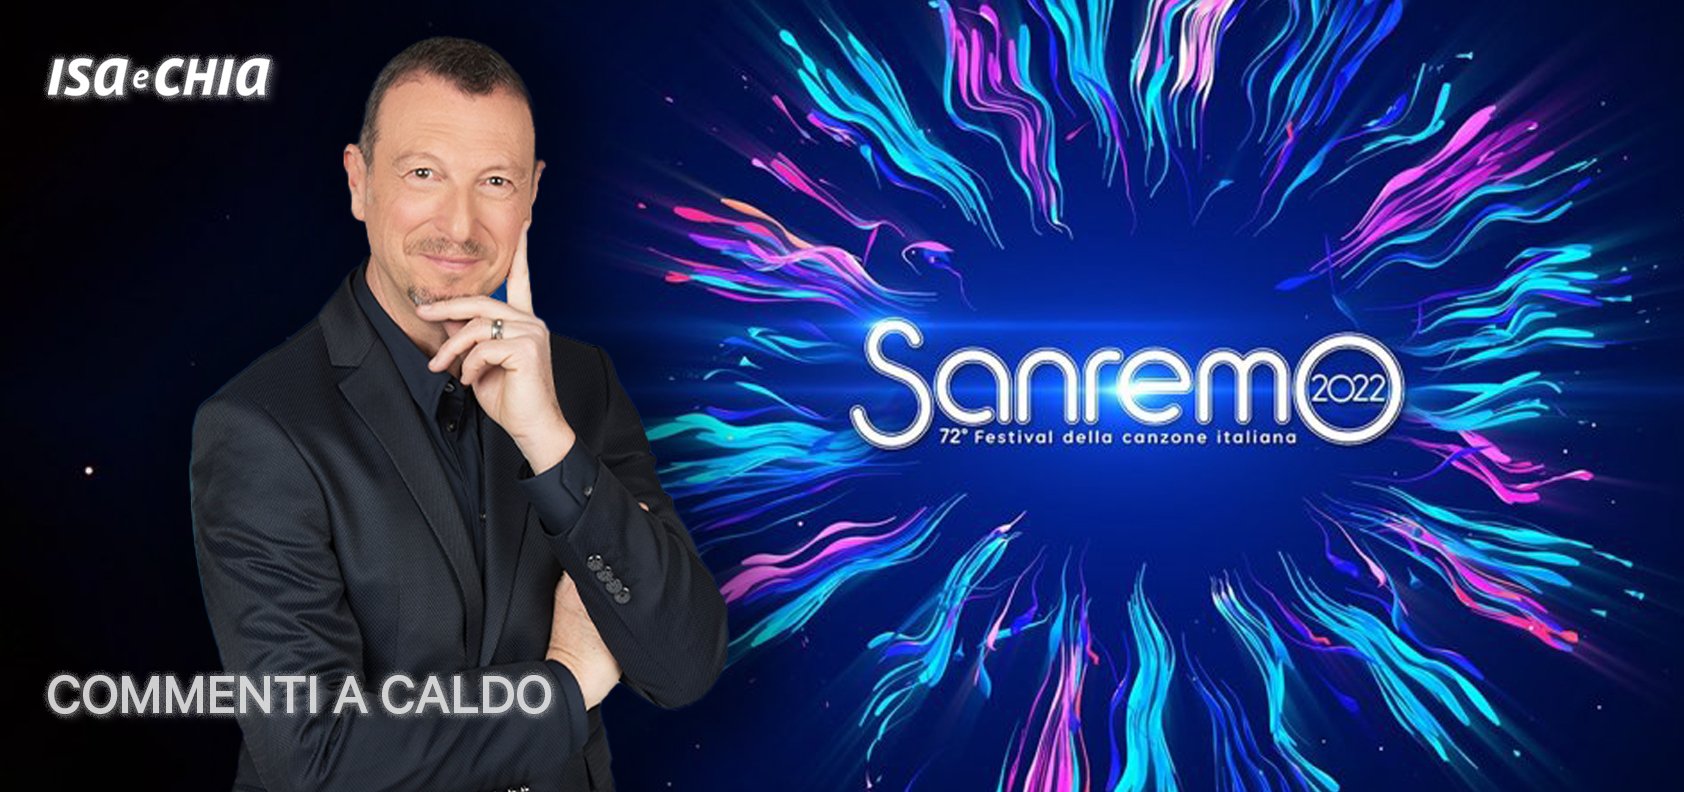 Sanremo 2022, la finale: commenti a caldo